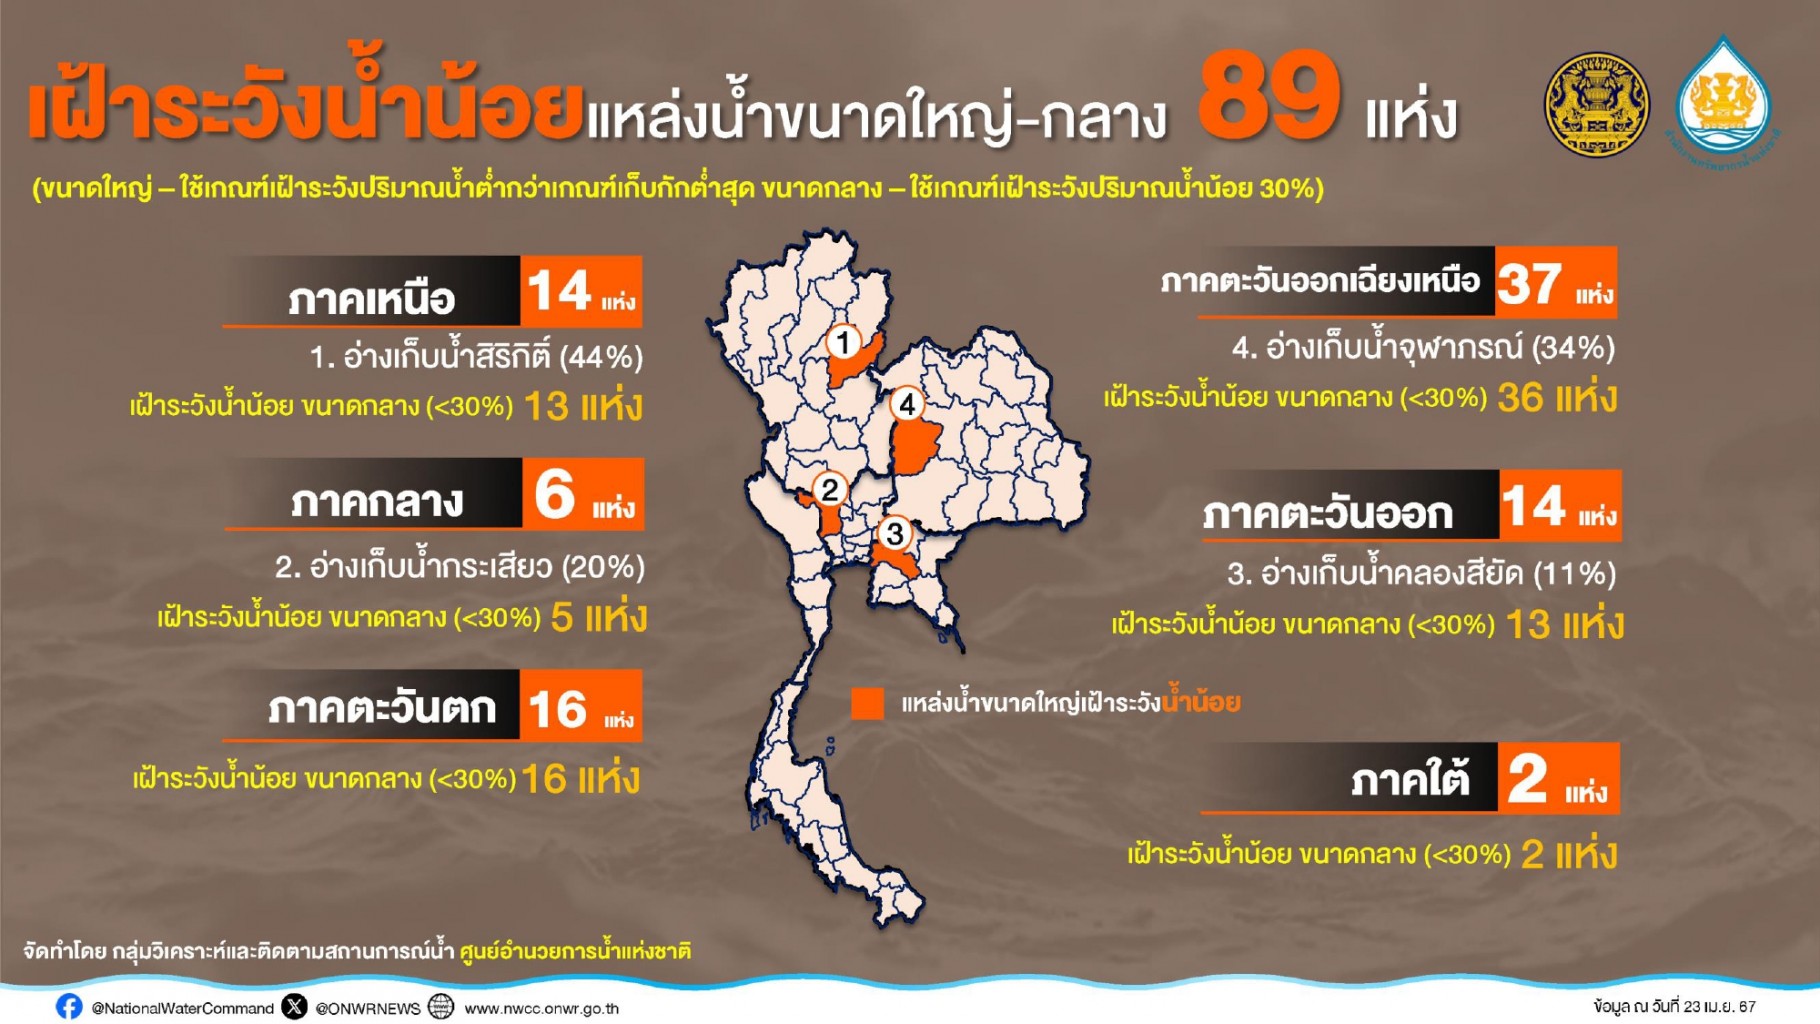 สทนช.แนวโน้มไทยปีนี้มีพายุ 1 - 3 ลูก ฝนเริ่มตก กลางเดือน พ.ค.